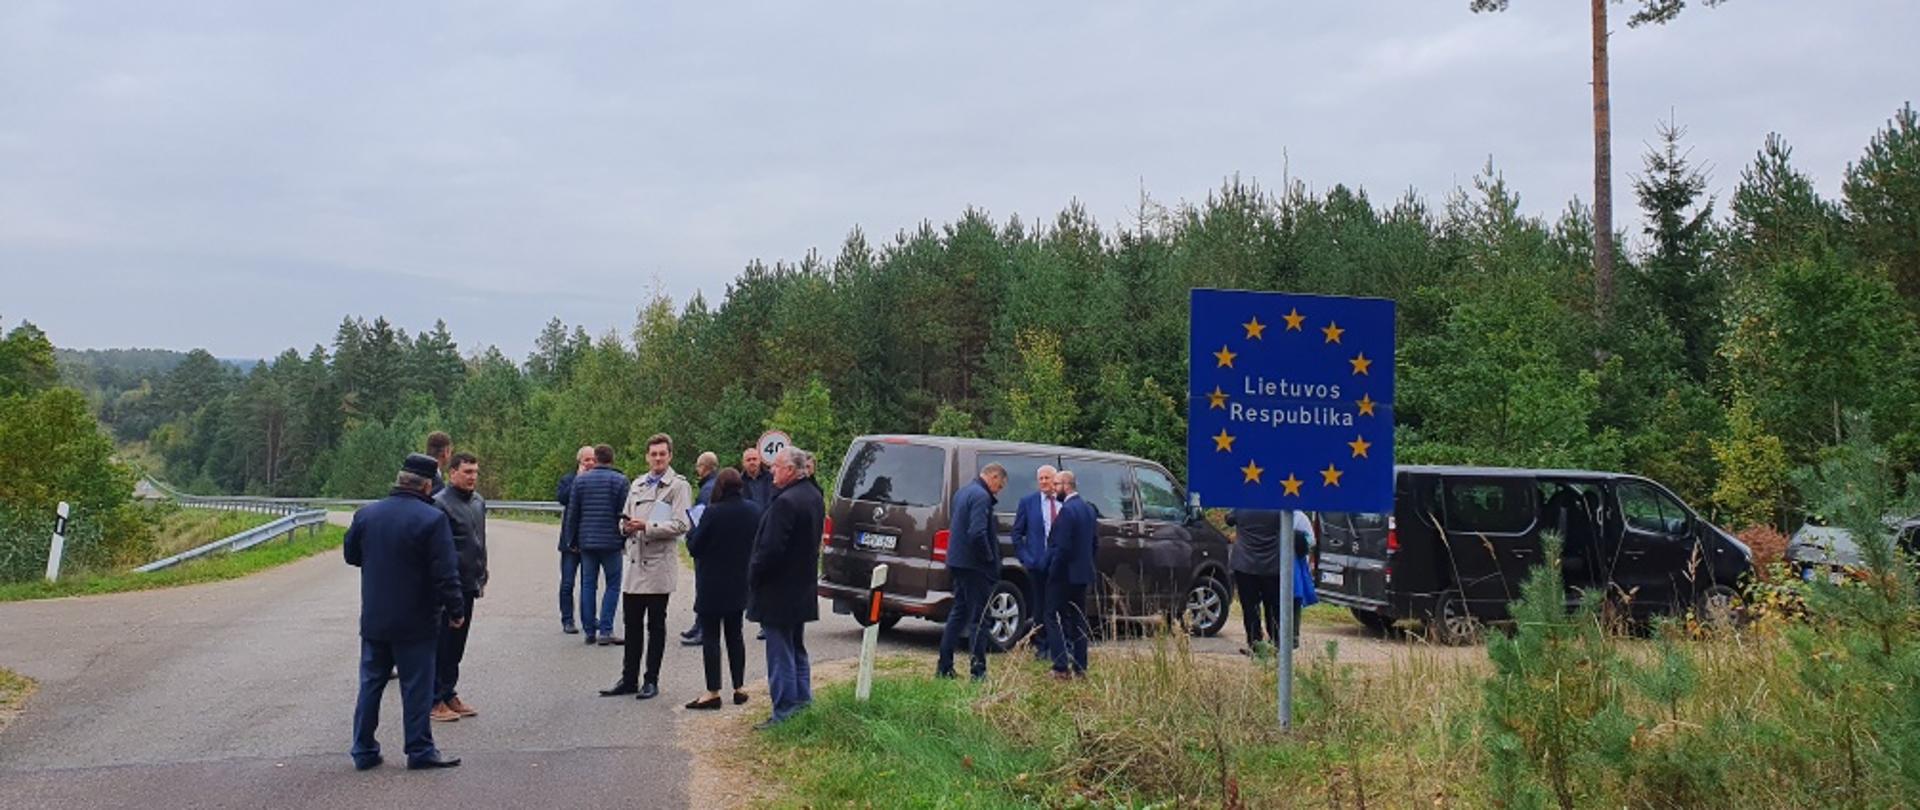 Polsko-litewska współpraca w budowie przygranicznych dróg lokalnych